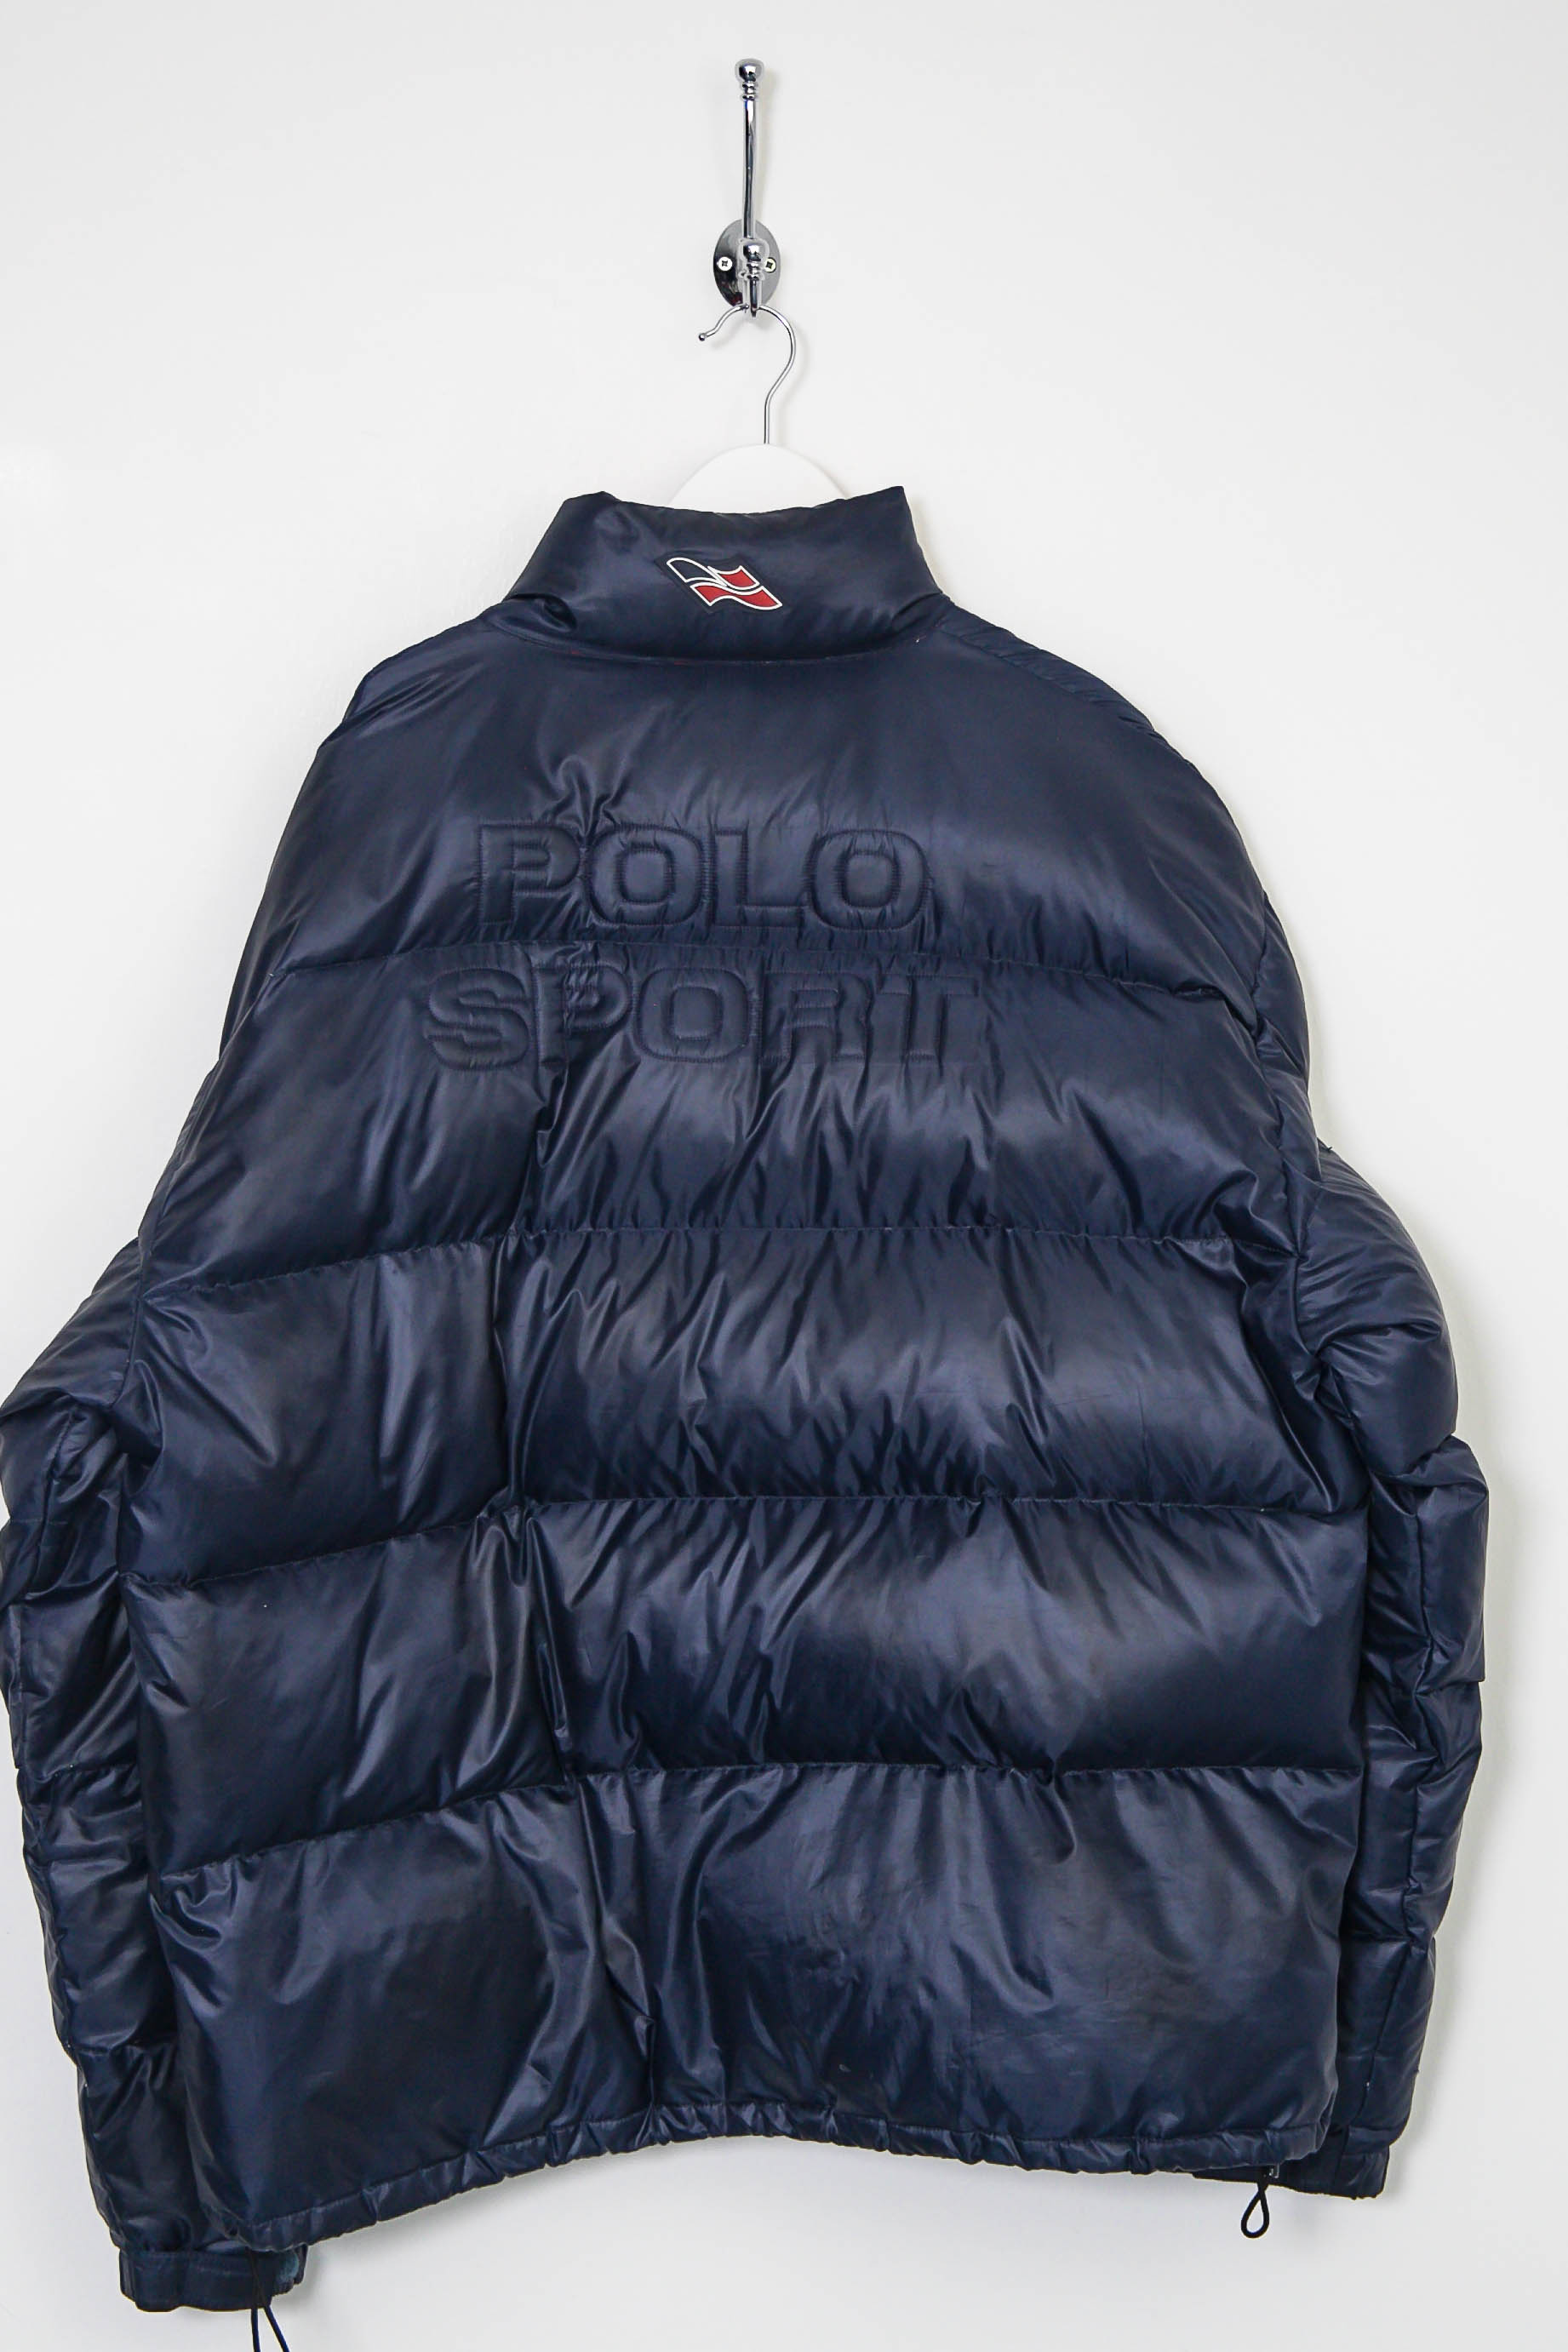 s Ralph Lauren Polo Sport Down Filled Puffer Jacket XL